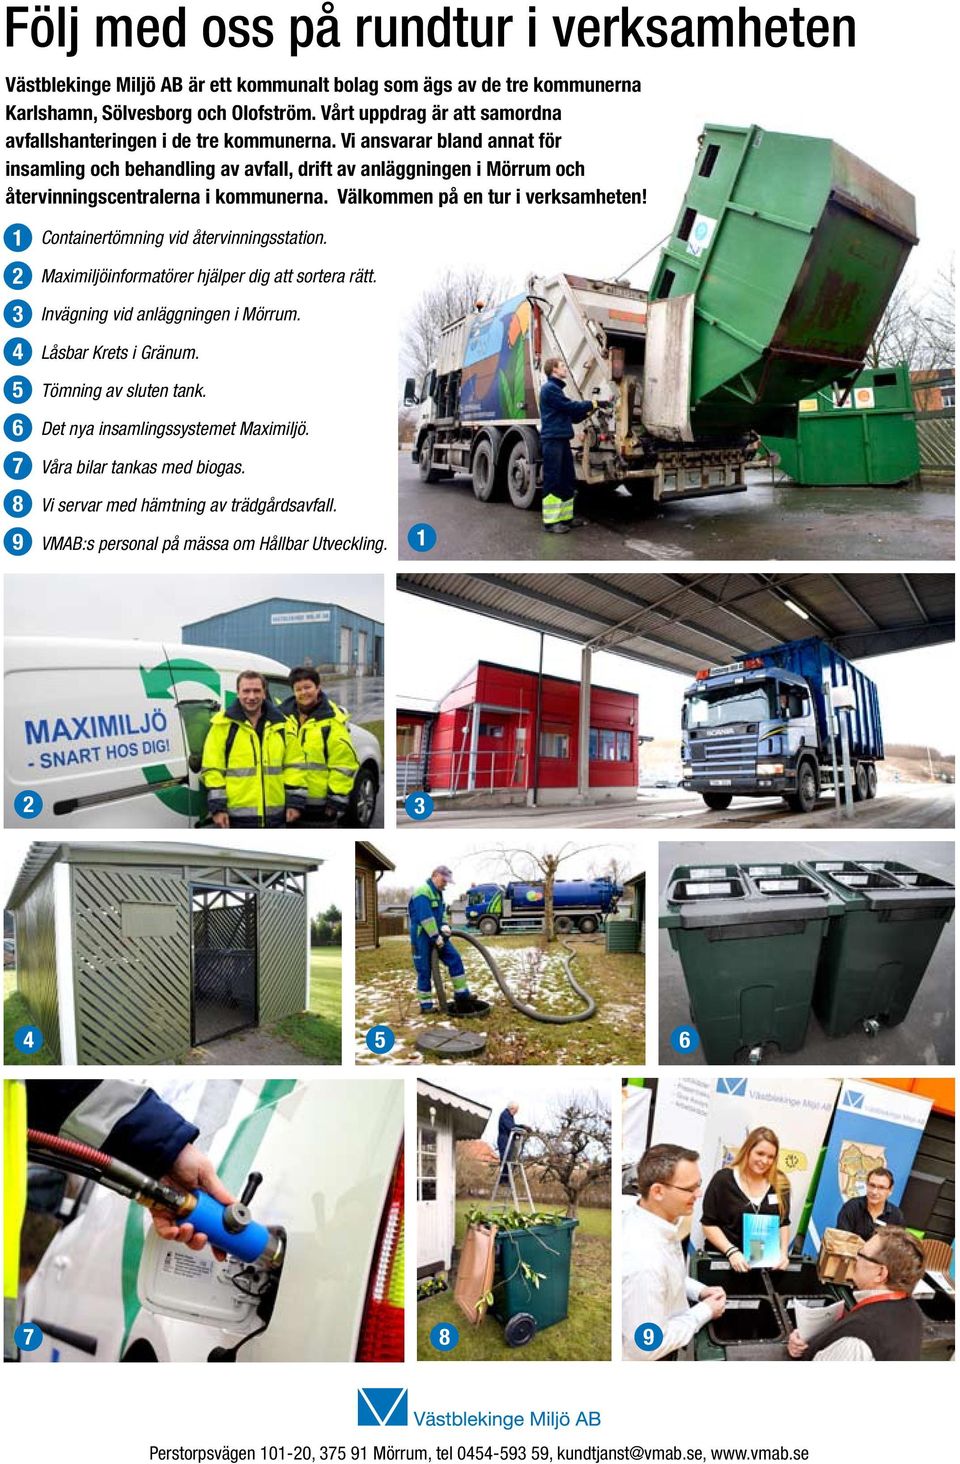 Vi ansvarar bland annat för insamling och behandling av avfall, drift av anläggningen i Mörrum och återvinningscentralerna i kommunerna. Välkommen på en tur i verksamheten!